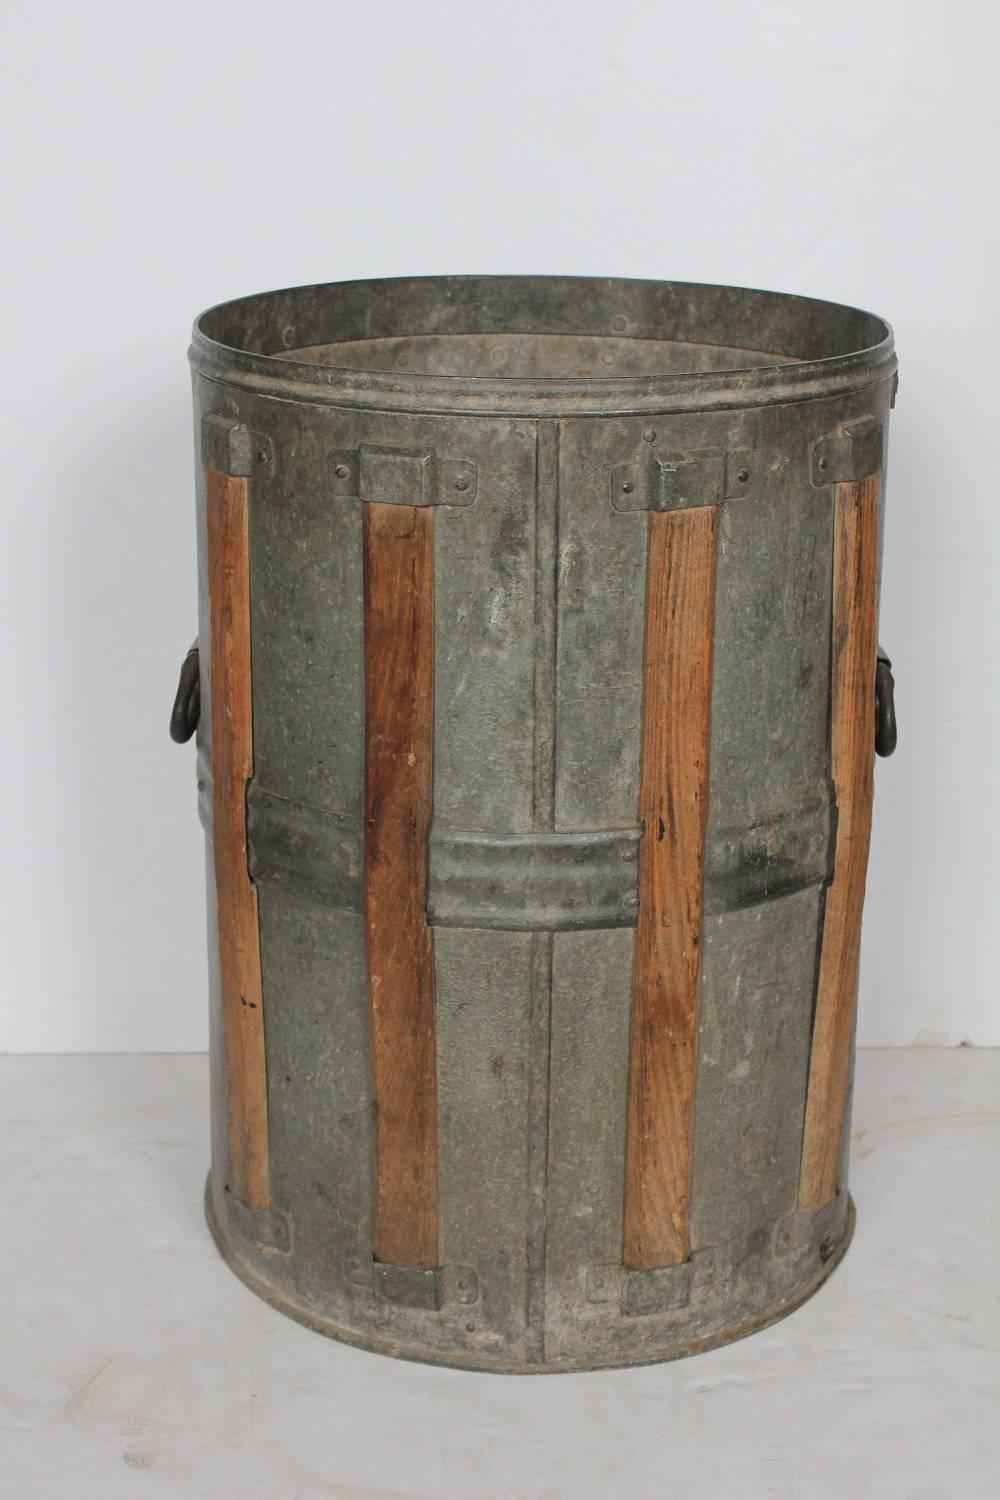 Antique rustic metal bucket.